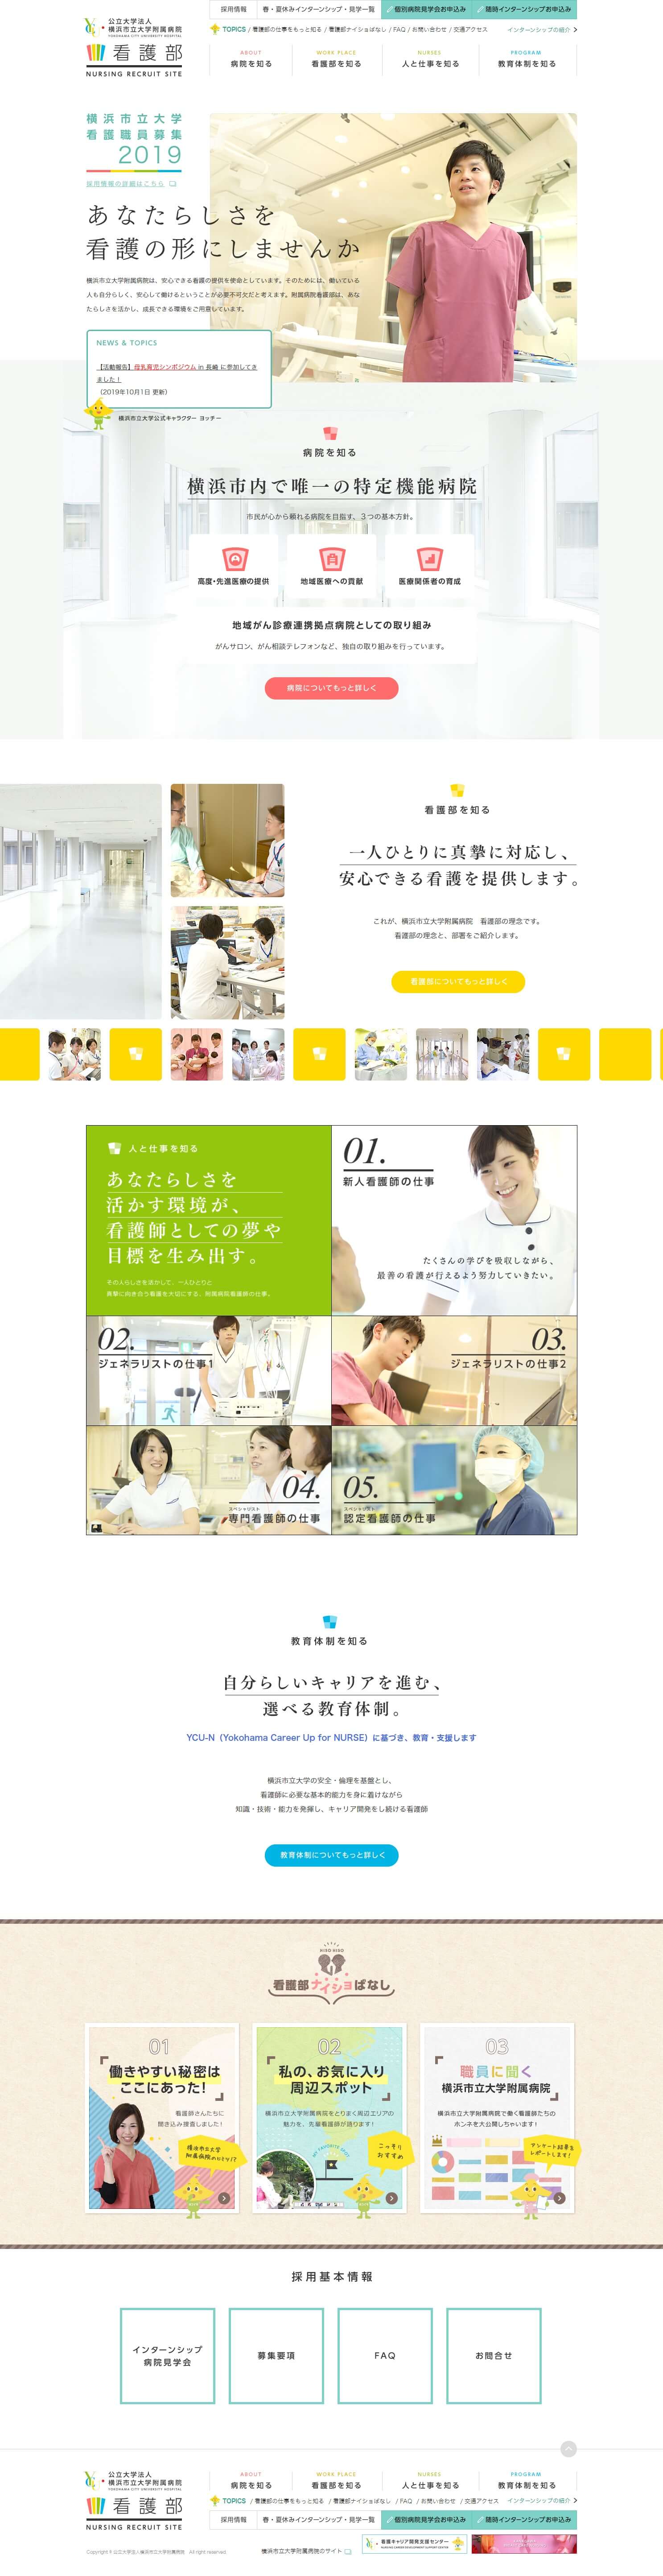 看護師募集求人サイト | 横浜市立大学附属病院　看護部